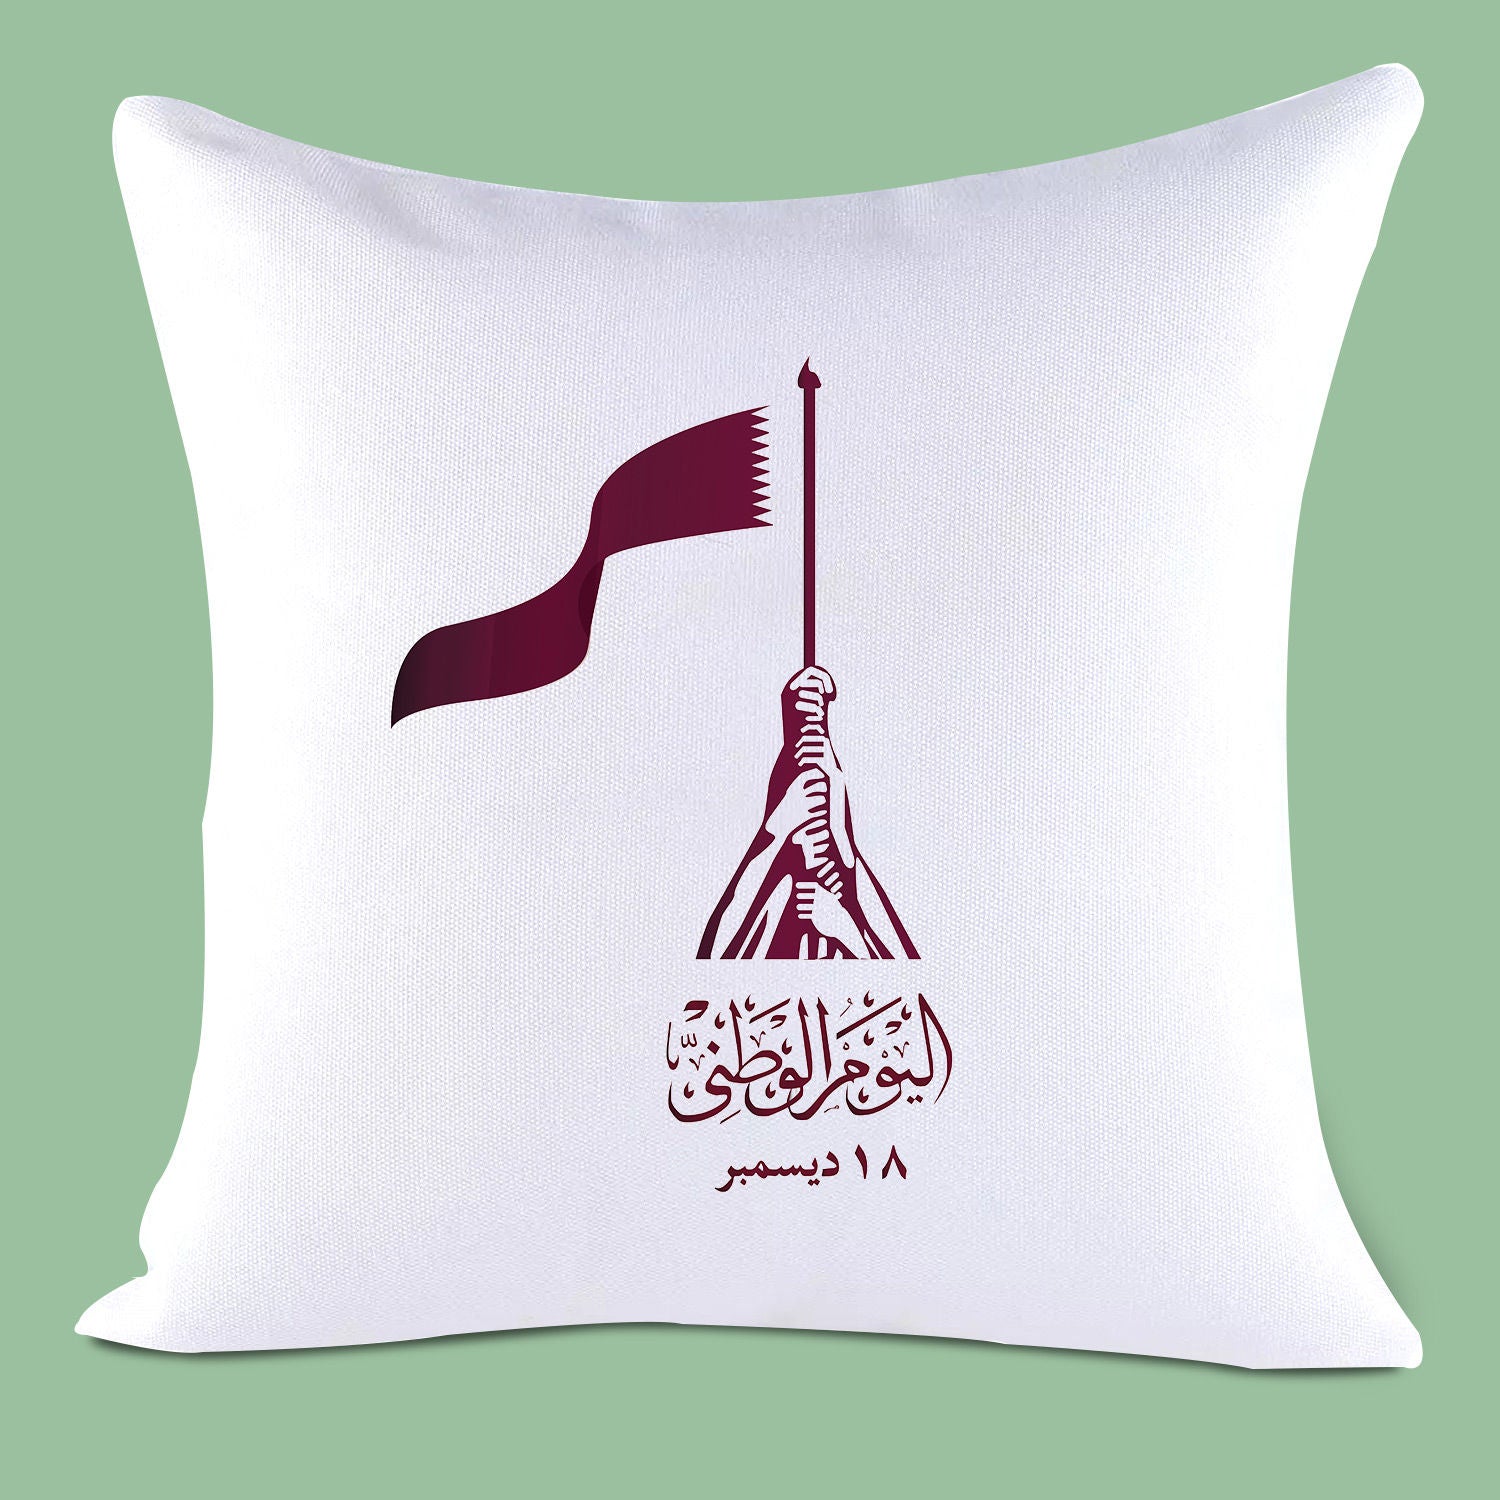 وسادة بيضاء أنيقة مطبوعة ومخصصة لليوم الوطني في قطر